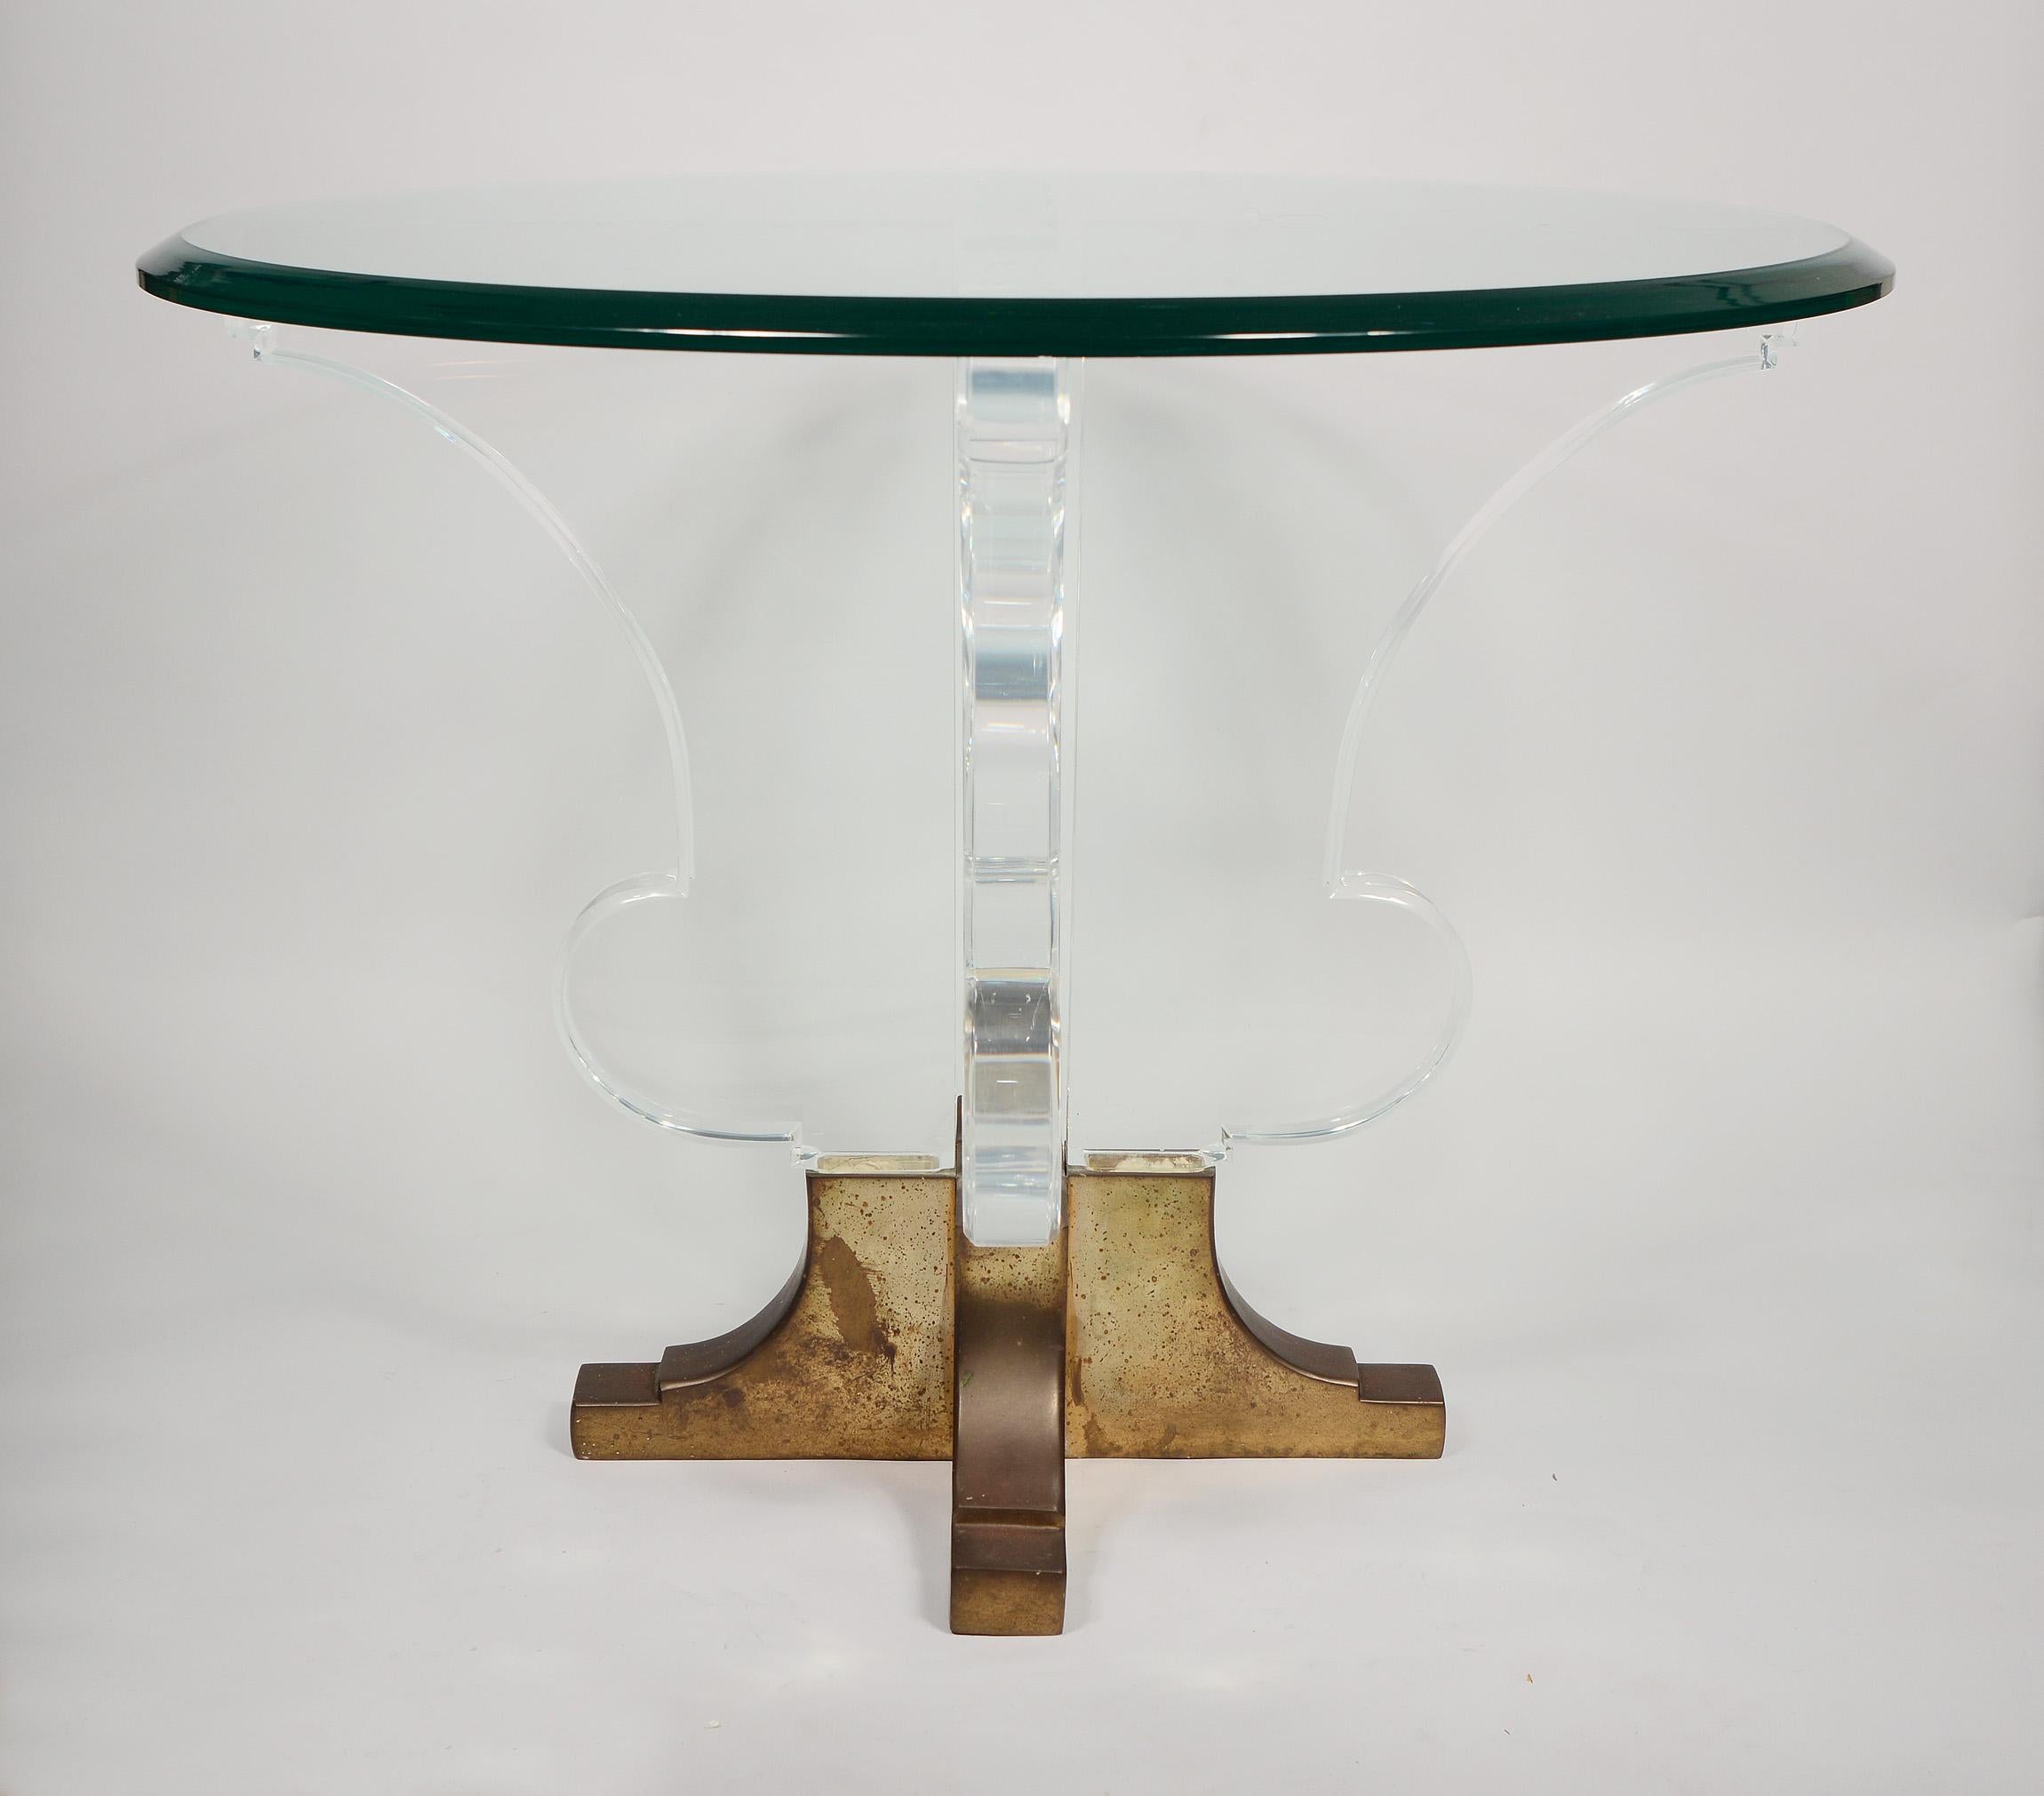 Table d'appoint ronde post-moderne en acrylique et laiton. Le profil de cette table ressemble à une urne de jardin néoclassique. Les côtés en acrylique ont une épaisseur de 1 1/2 pouces. La base est en laiton moulé qui était probablement polie à